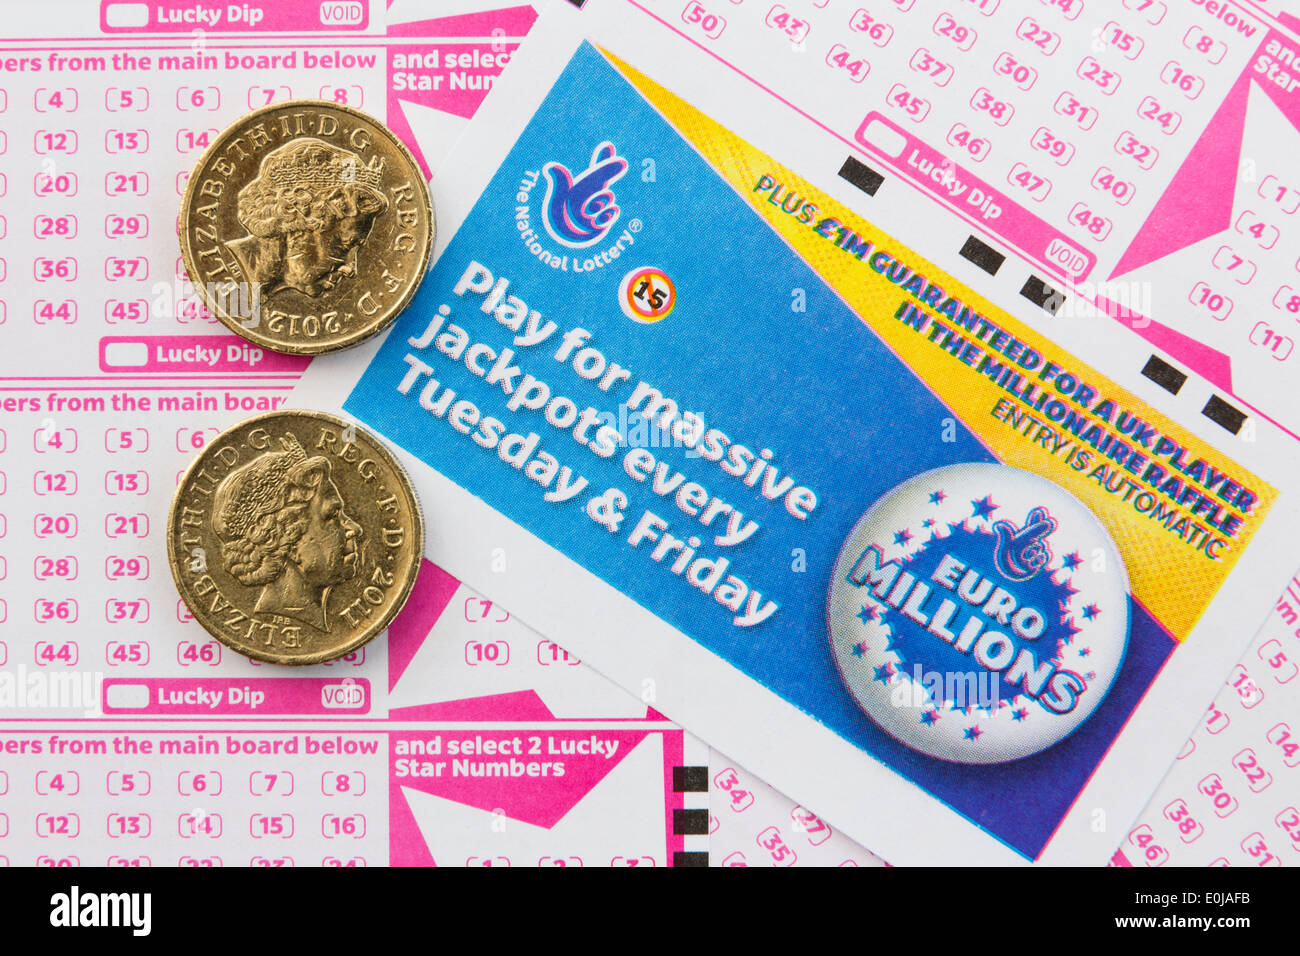 UK National Lotterie Euro Millions Gehaltsabrechnungen mit Anzahl Boards  für die Auswahl der Zahlen und zwei 1 Pfund-Münzen von oben.  England-Großbritannien Stockfotografie - Alamy